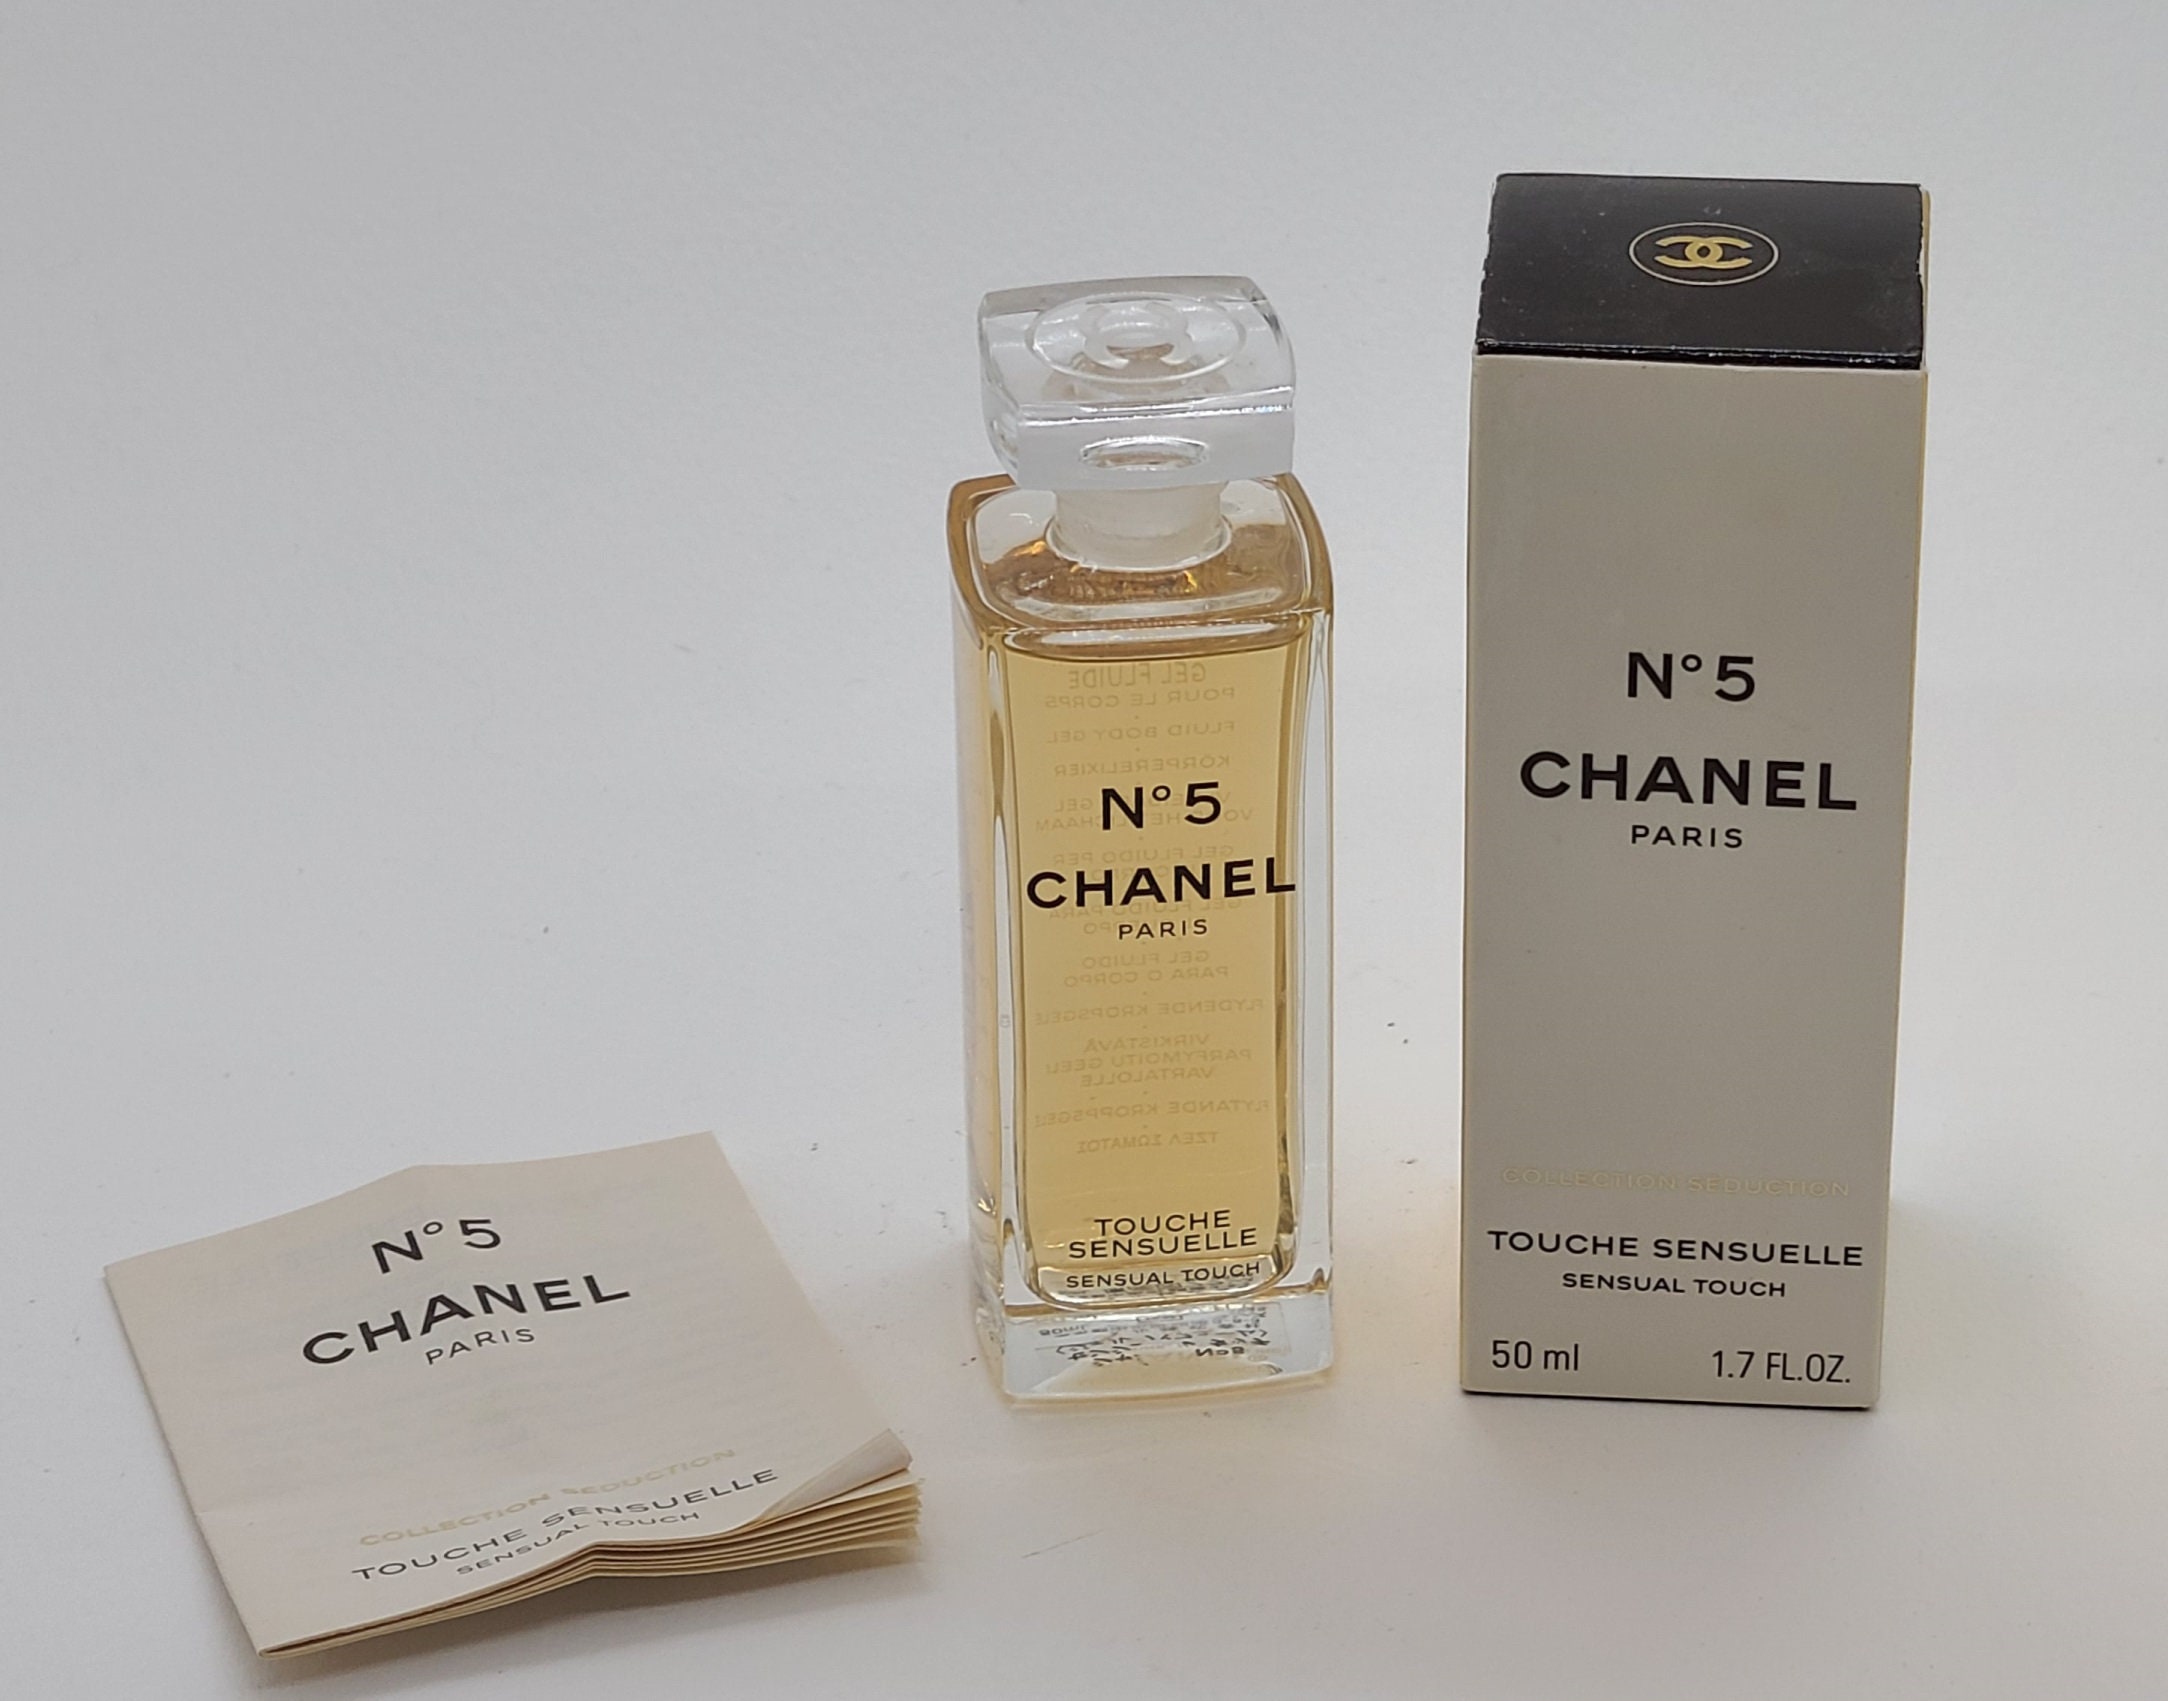 Chanel No 5 Elixir Sensuel Sensual Elixir Gel Touche 